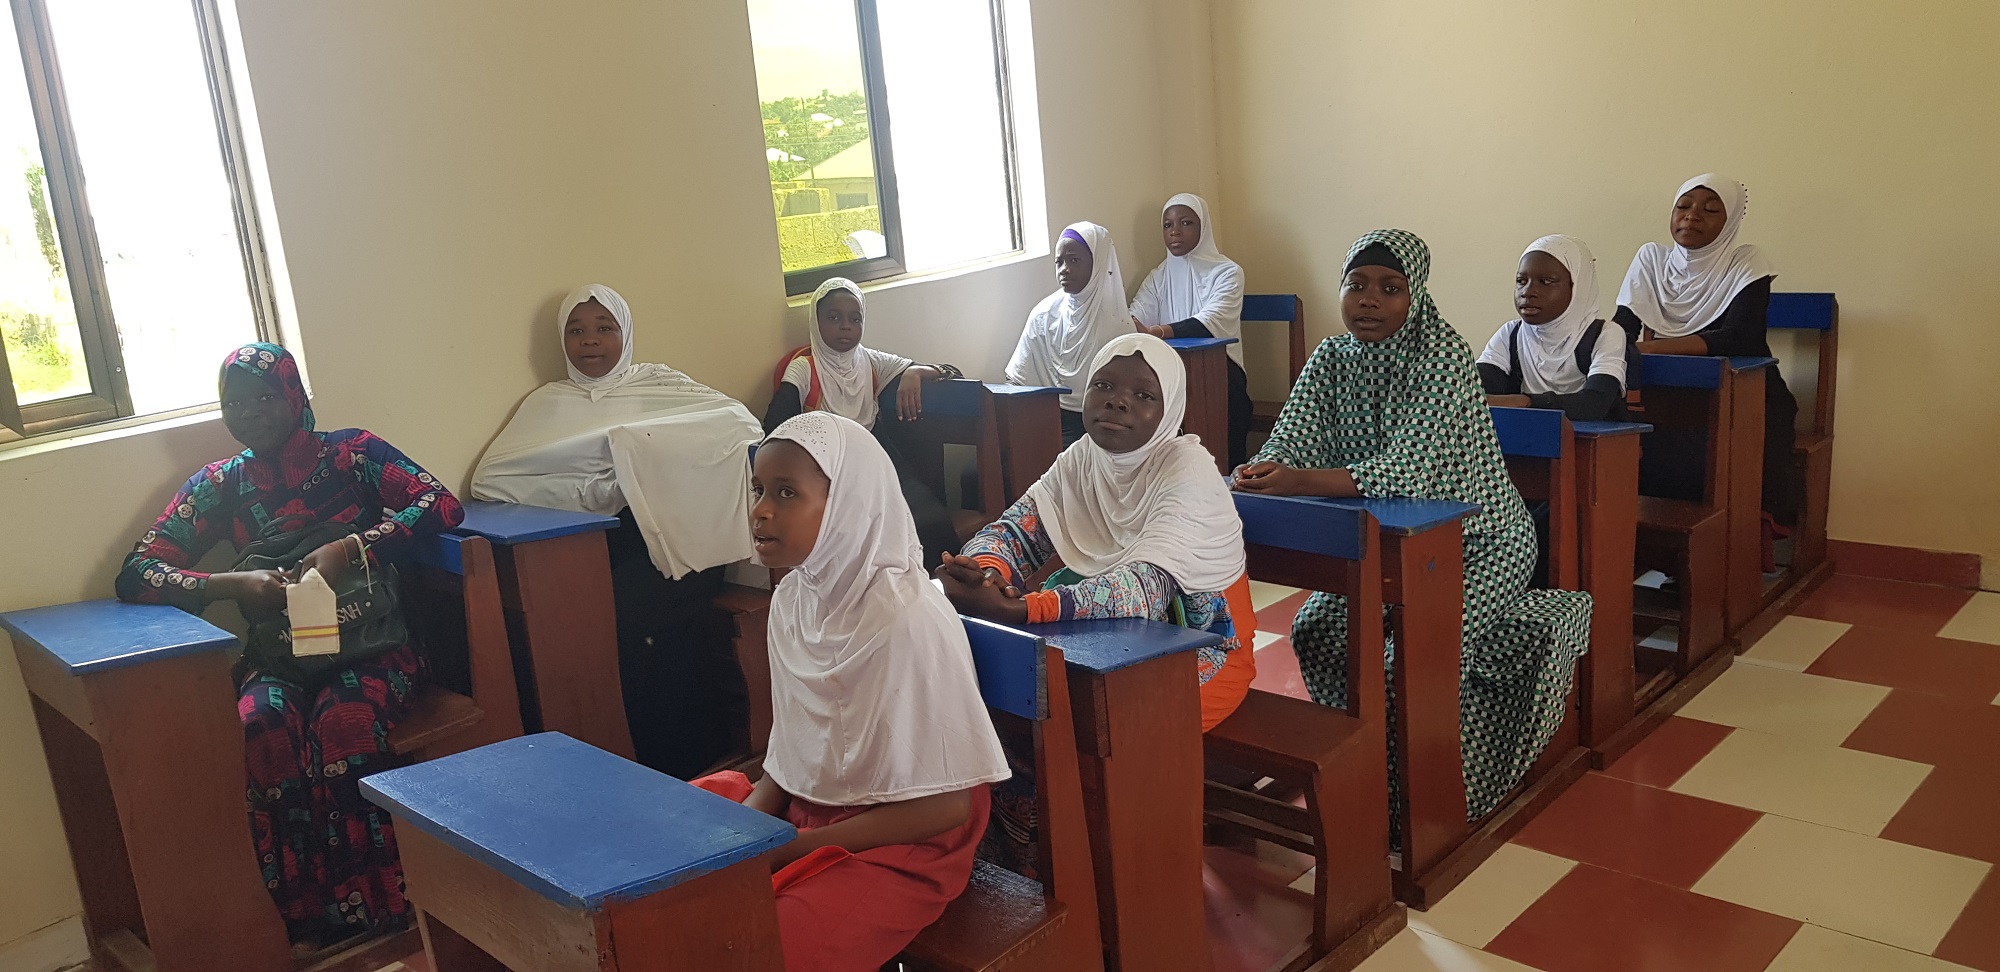 قطر الخيرية تفتتح 4 مدارس في غانا تسهم في وضع حد لتسرب الطلاب في غانا